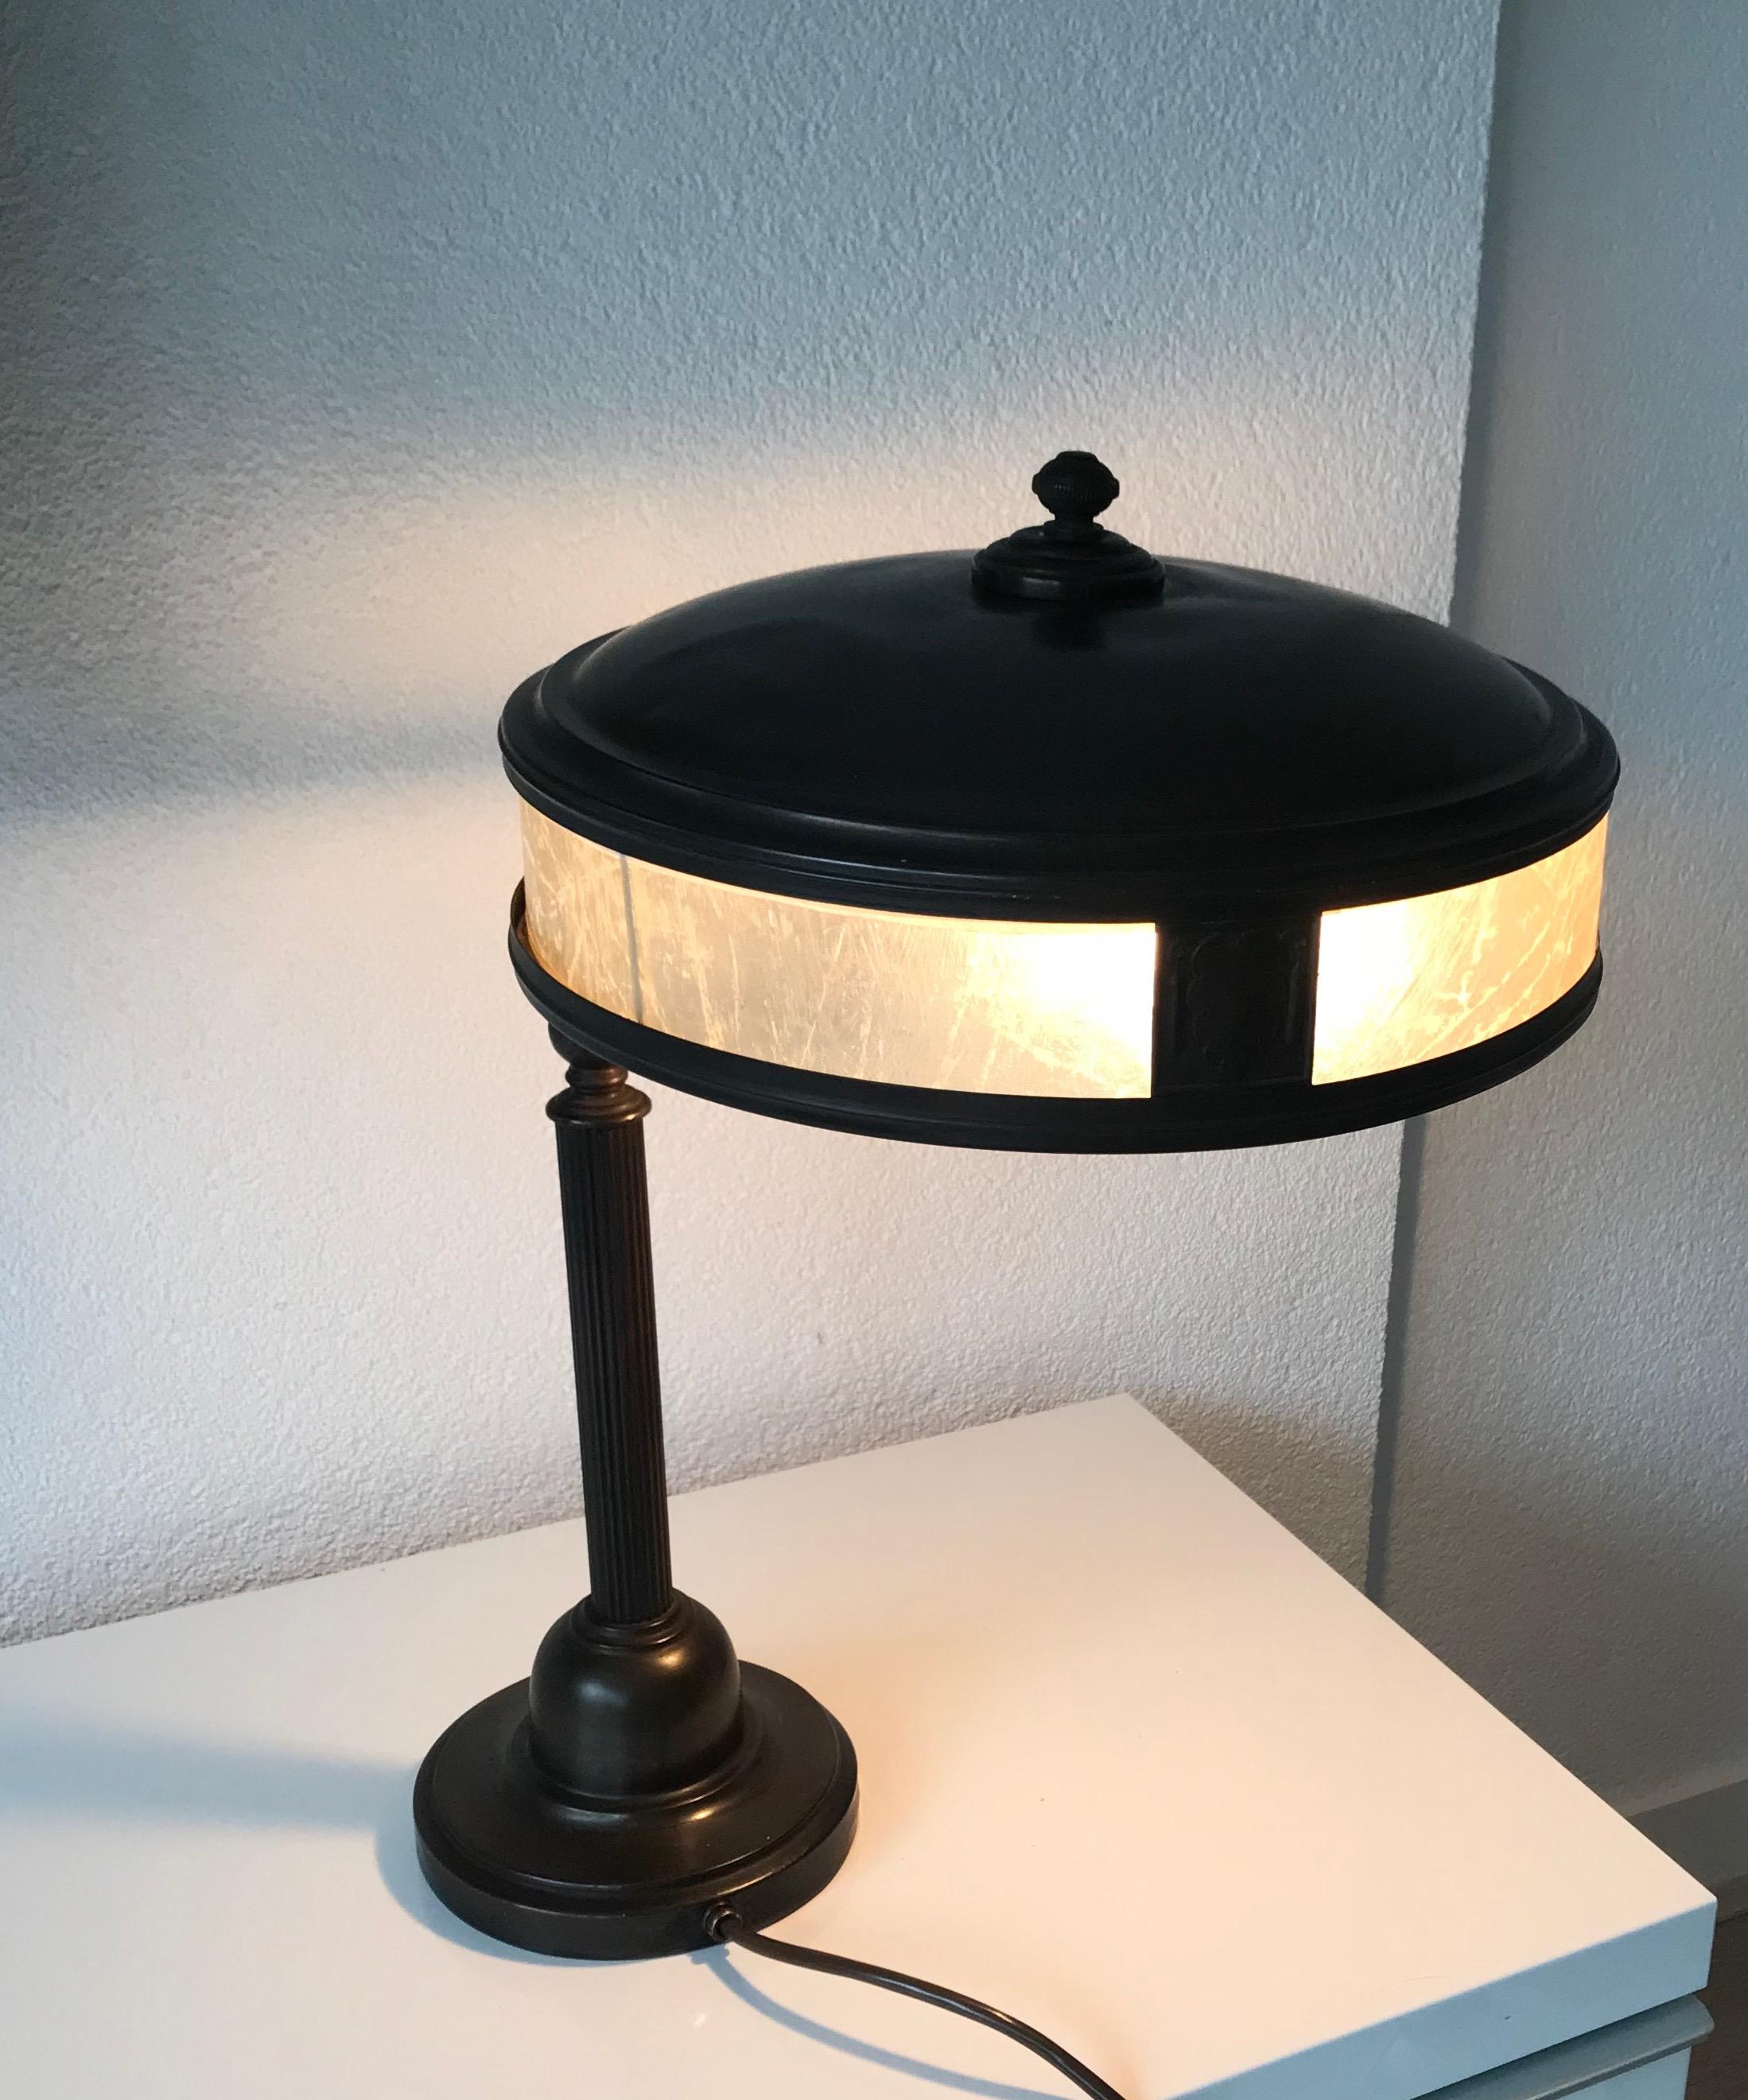 Jugendstil Era Arts & Crafts Patinated Brass Table or Desk Standard Lamp 11